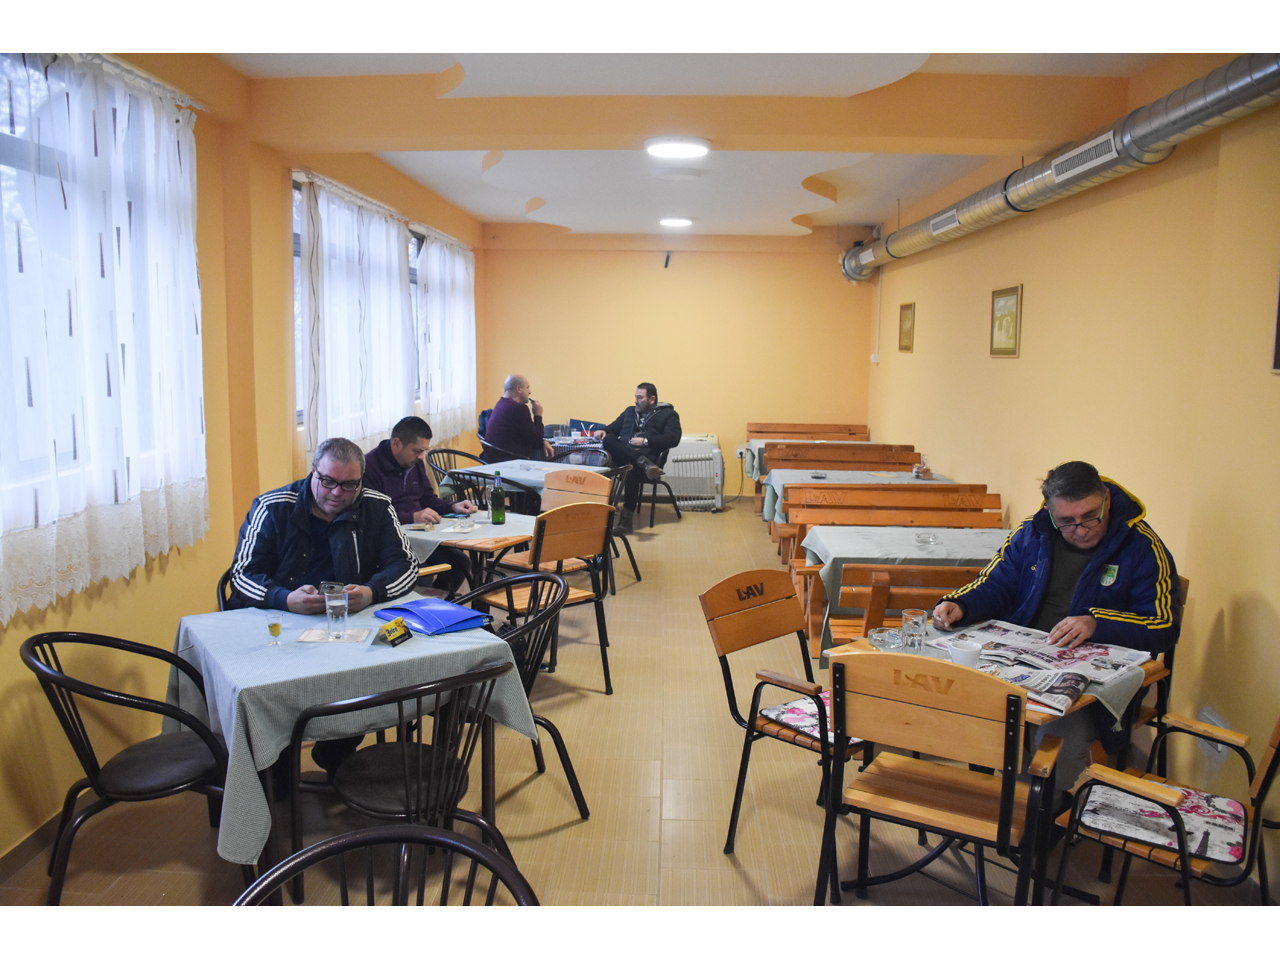 NASE SIROKO SRCE Restaurants Belgrade - Photo 1